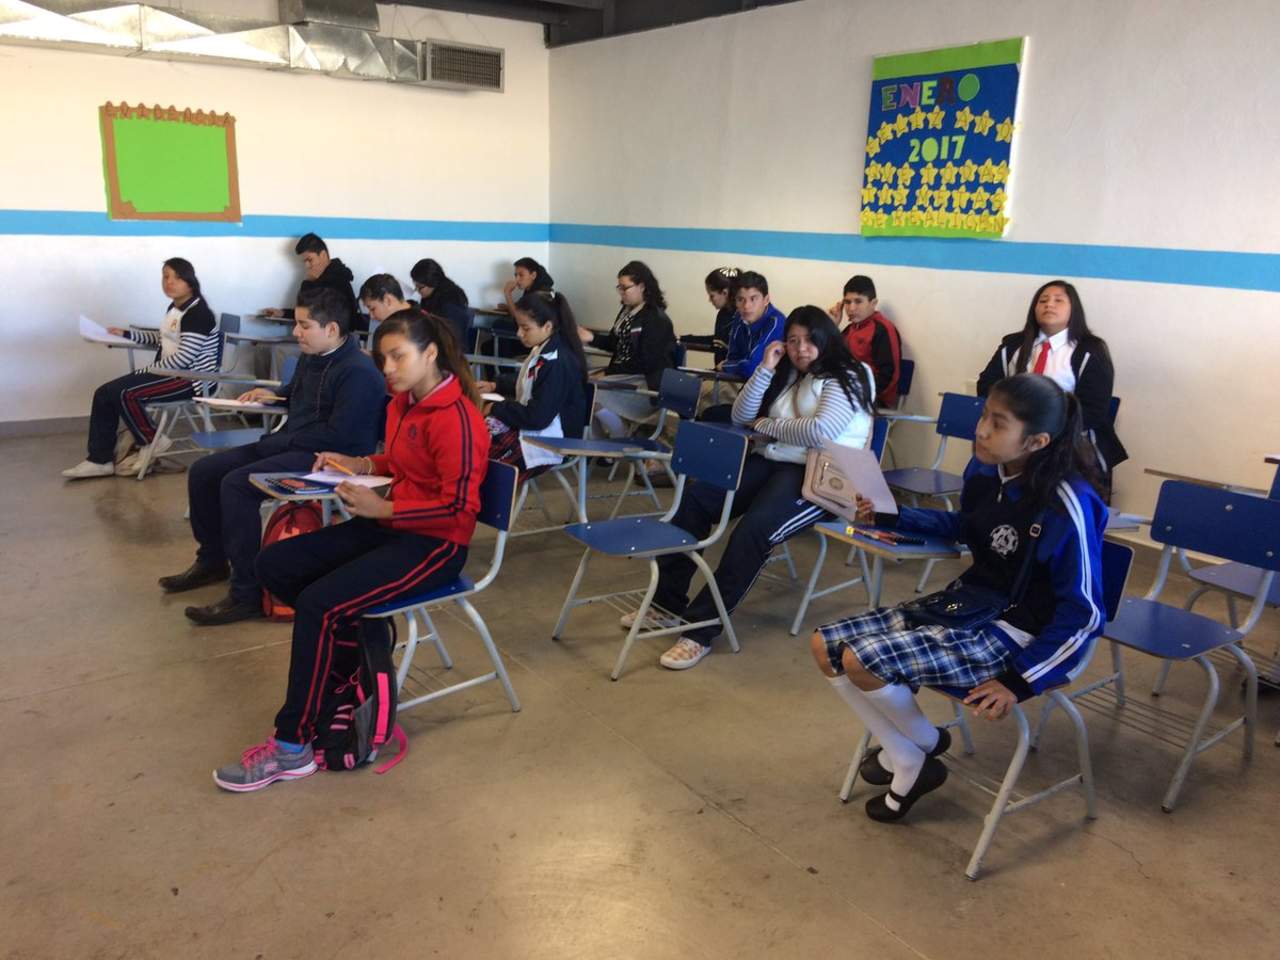 De más de mil 500 alumnos que iniciaron el certamen, hasta el momento solamente quedan 469 estudiantes que buscarán su pase para representar a La Laguna a nivel nacional. (EL SIGLO DE TORREÓN)